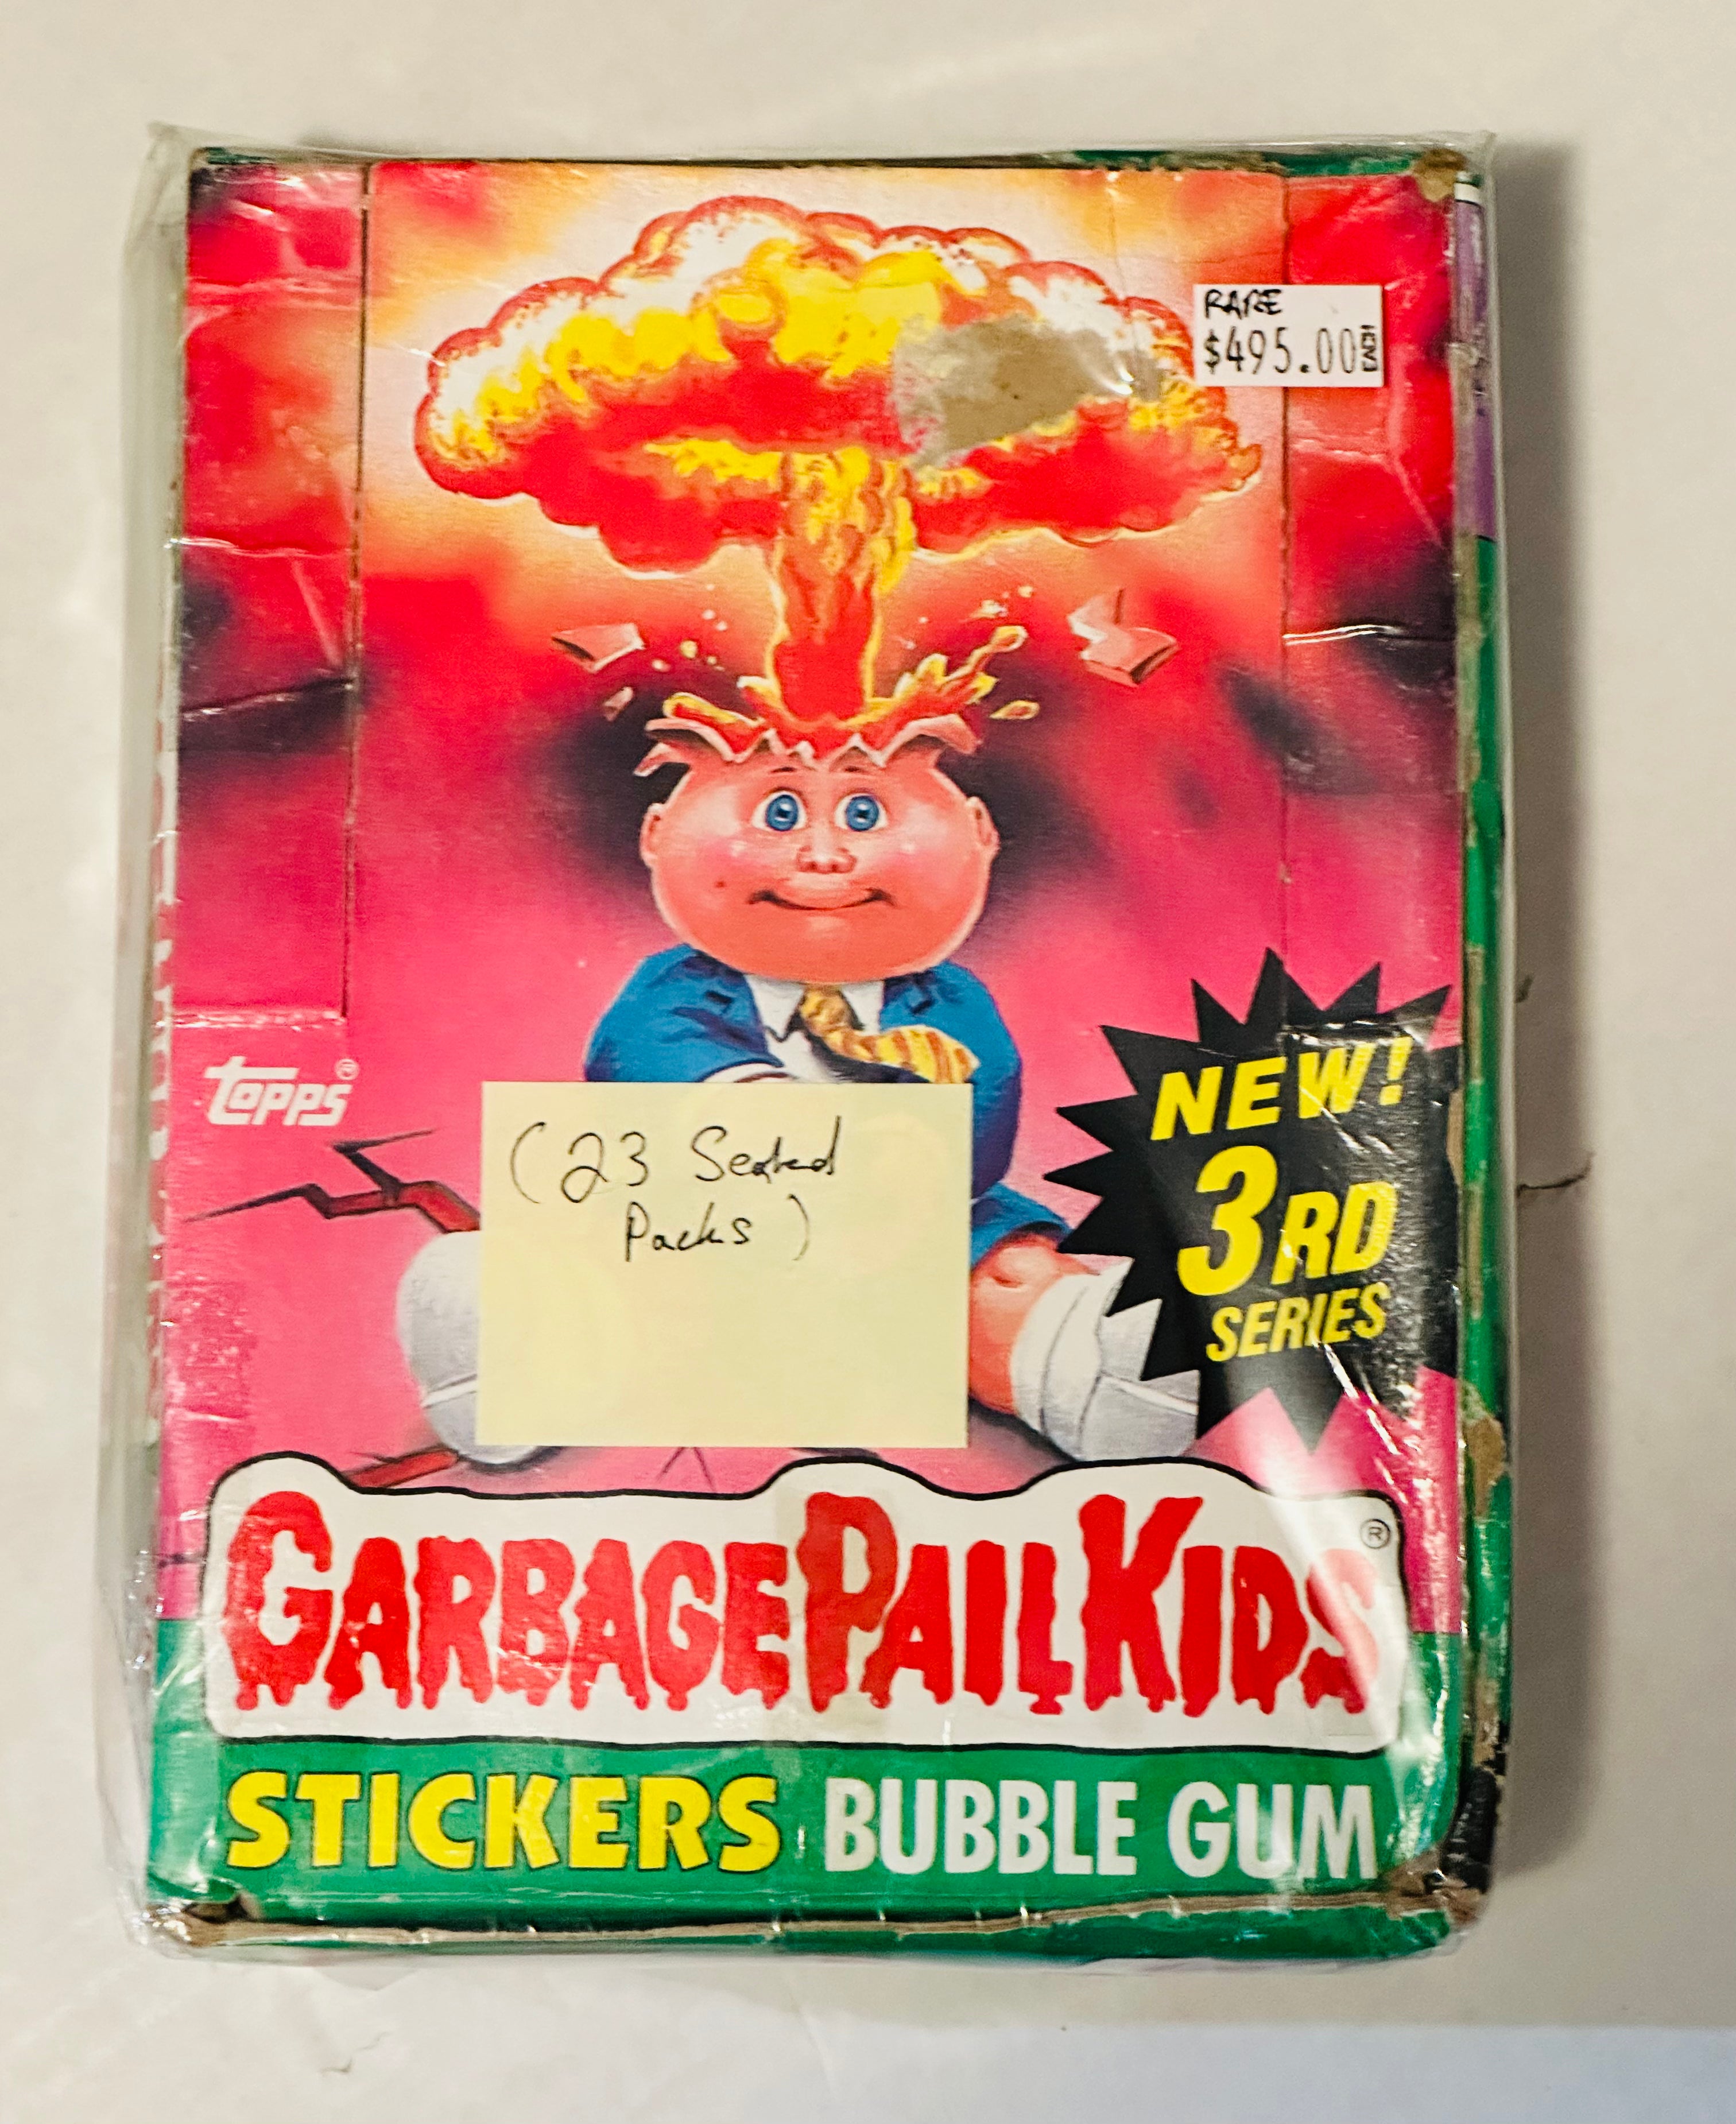 Garbage Pail Kids series 3 rare 23 sealed packs cards box 1985